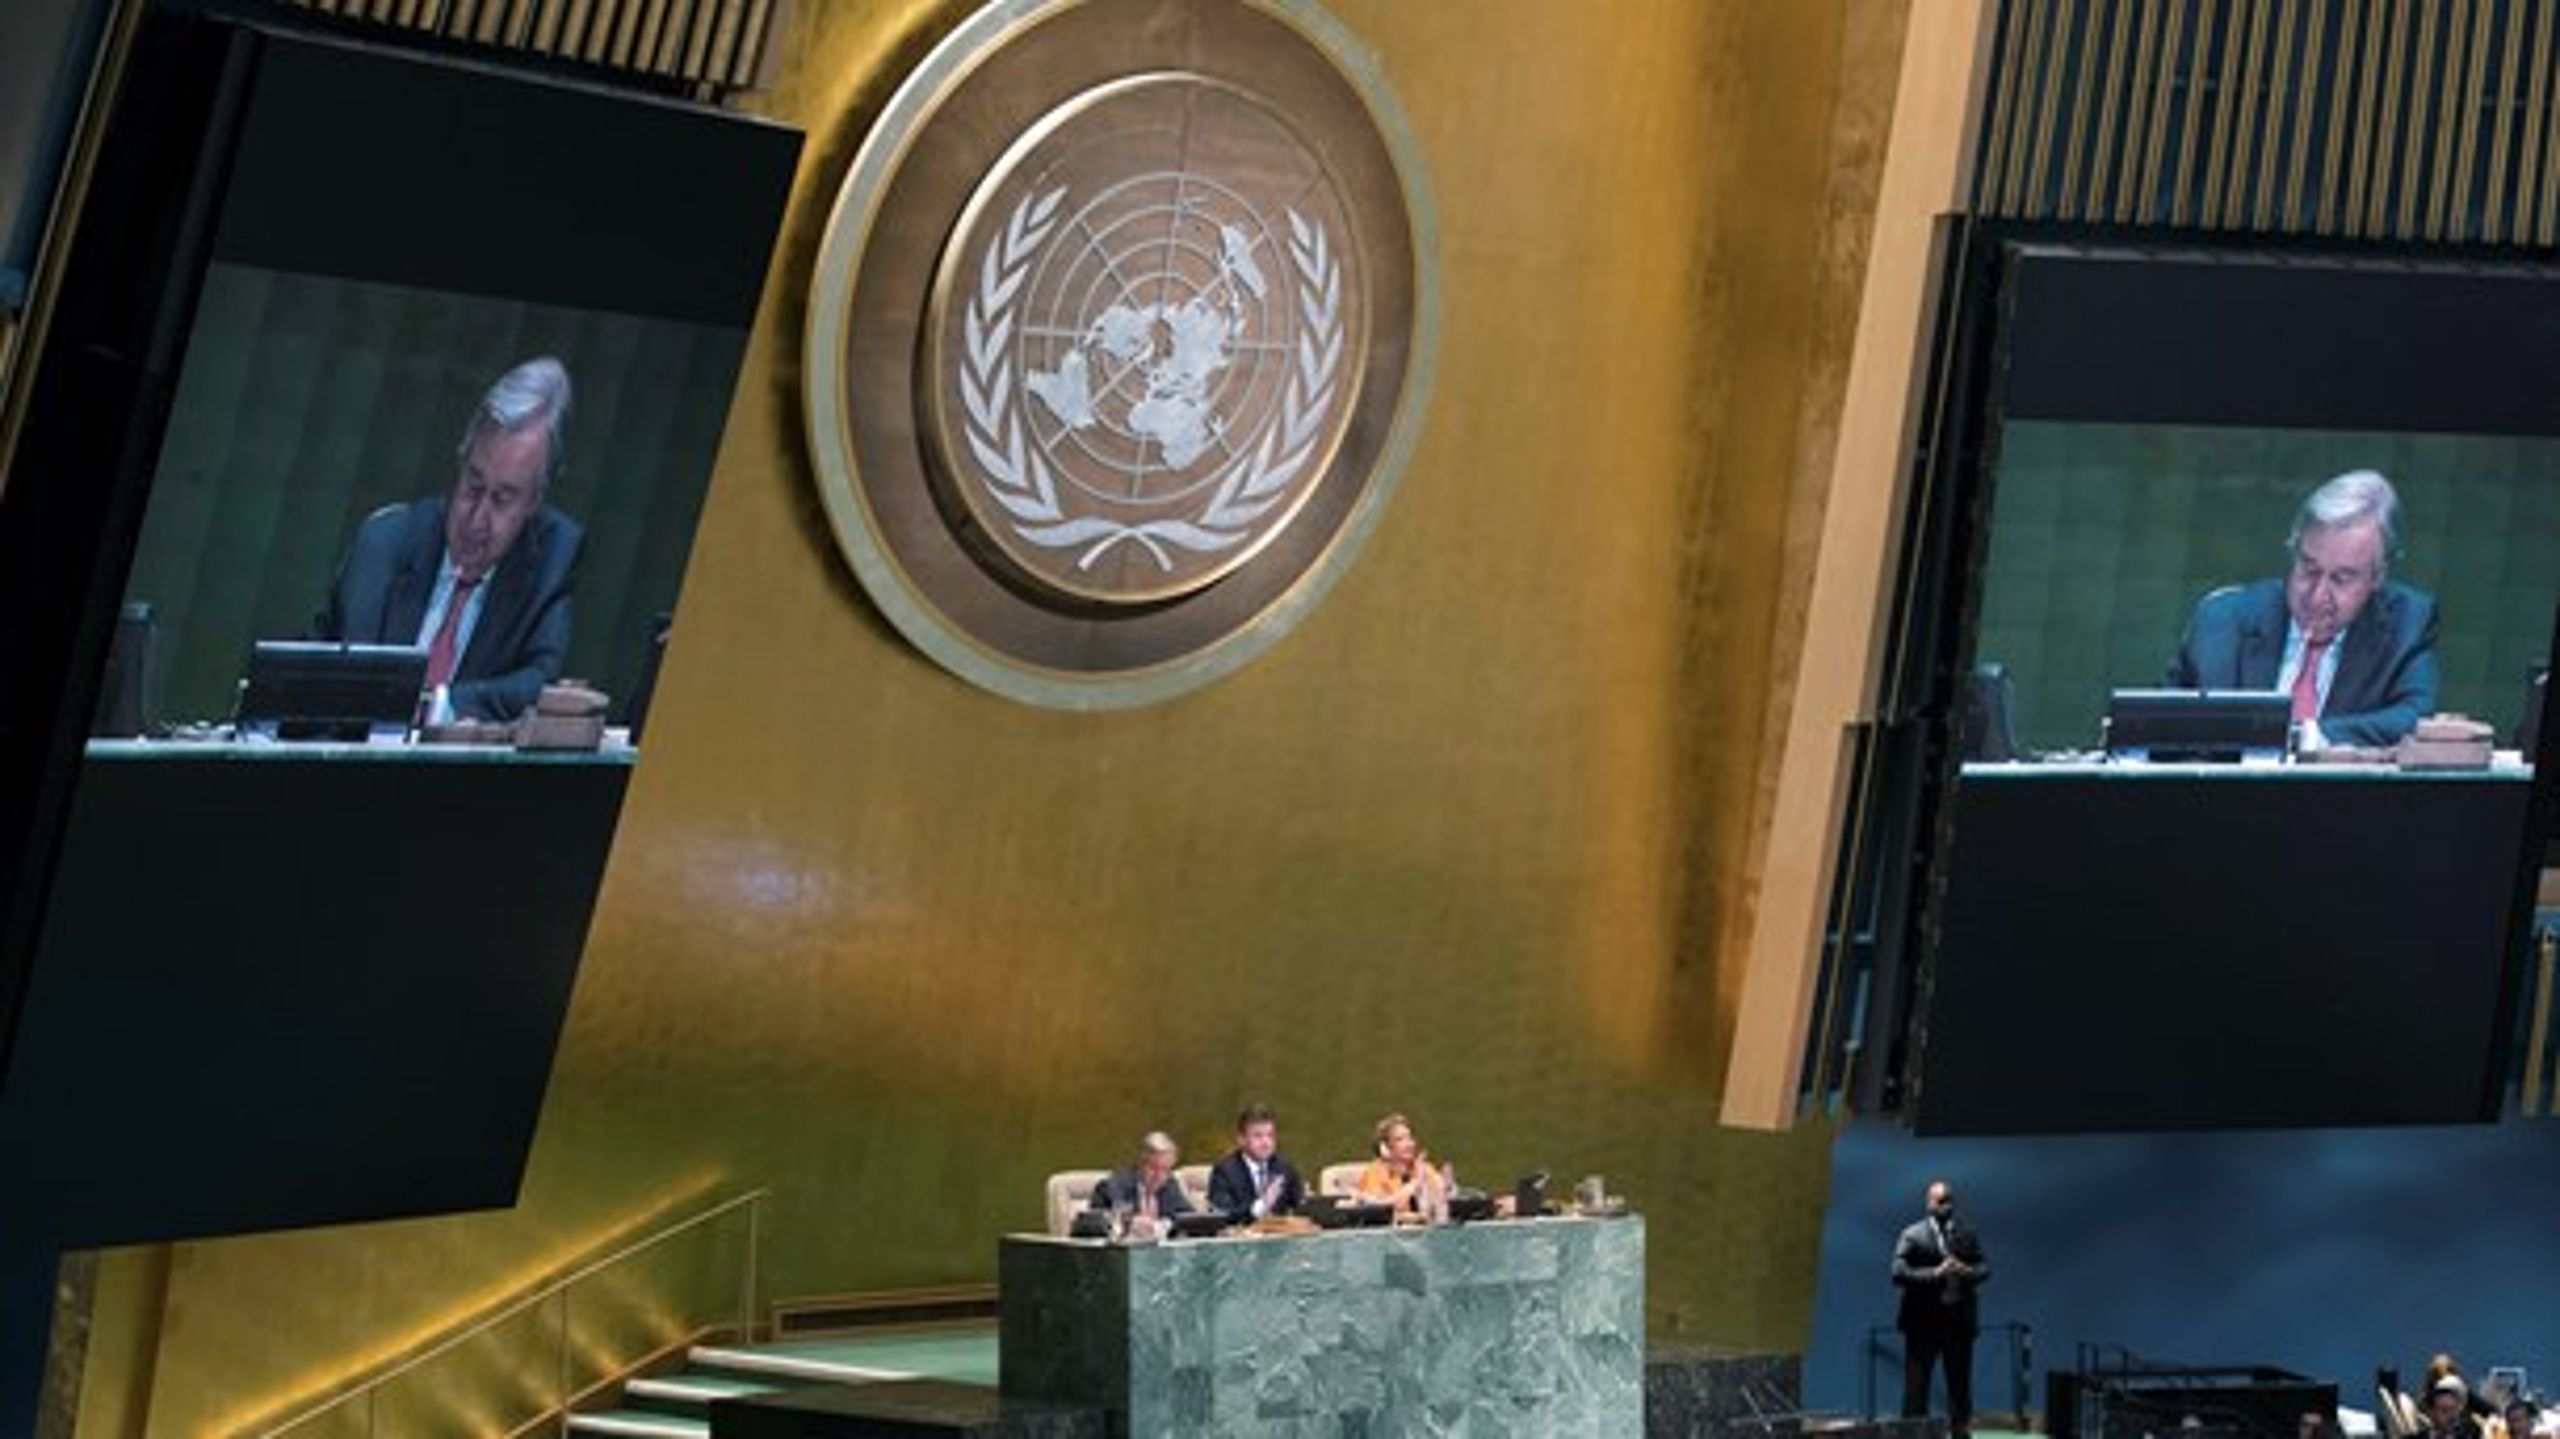 Siden sin tiltræden som FN's generalsekretær i april 2017 har den tidligere portugisiske premierminister António Guterres&nbsp;forsøgt at reformere FN's indre struktur. Selv kalder han det for den mest ambitiøse og omfattende reform af FN i årtier. (Foto: Mary Altafeer).&nbsp;<br>